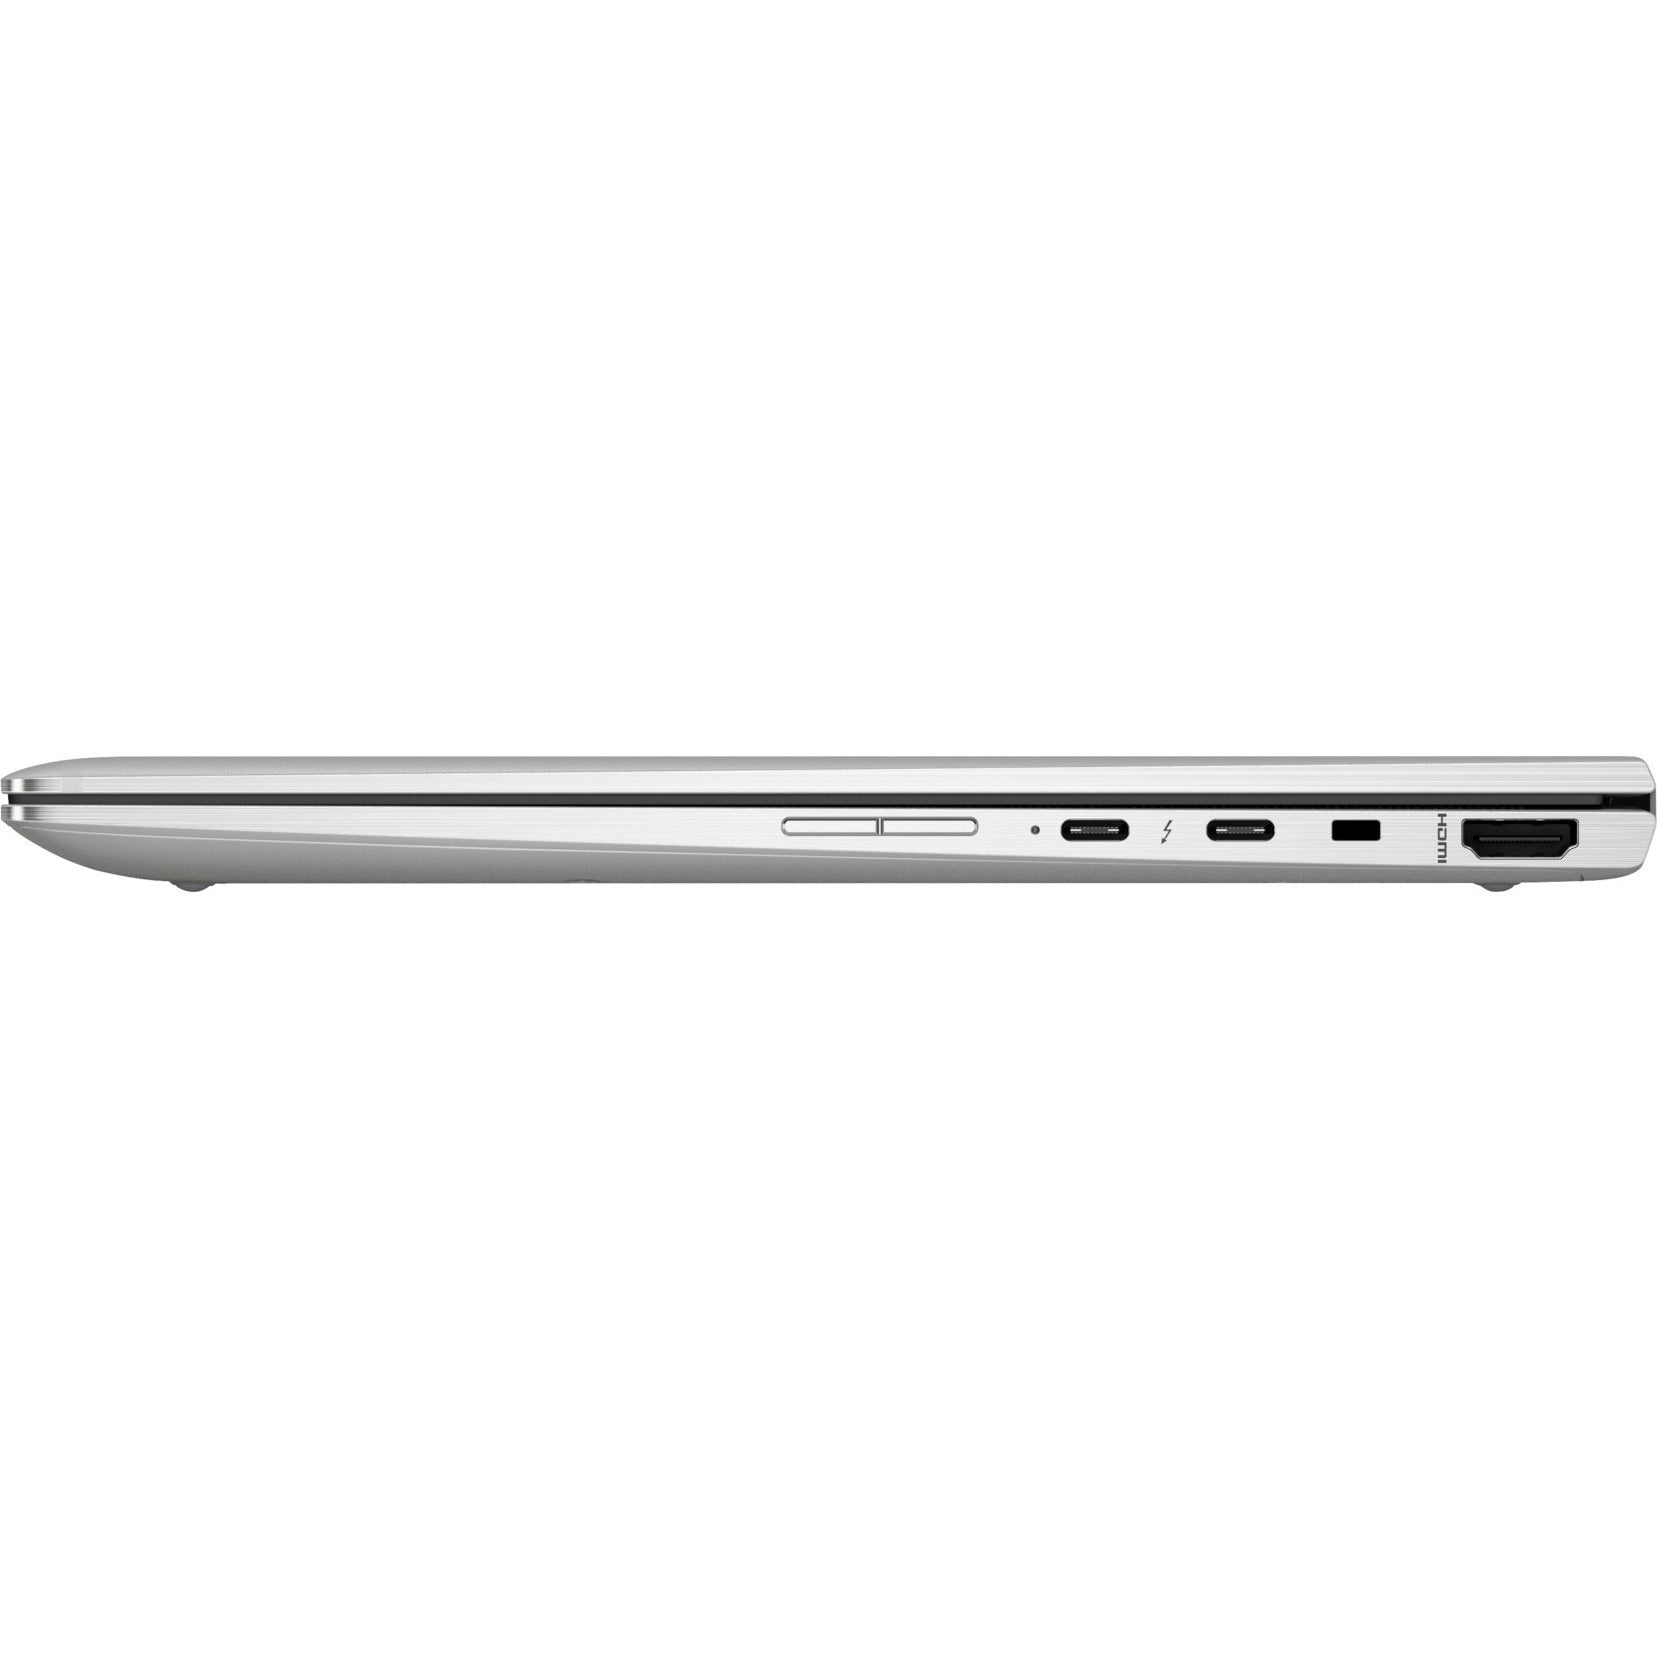 HP EliteBook x360 1040 G5 LTE Advanced 14" Touchscreen 2 in 1 Notebook - Intel Core i7 8th Gen i7-8650U Quad-core (4 Core) 1.90 GHz - 16 GB RAM - 512 GB SSD